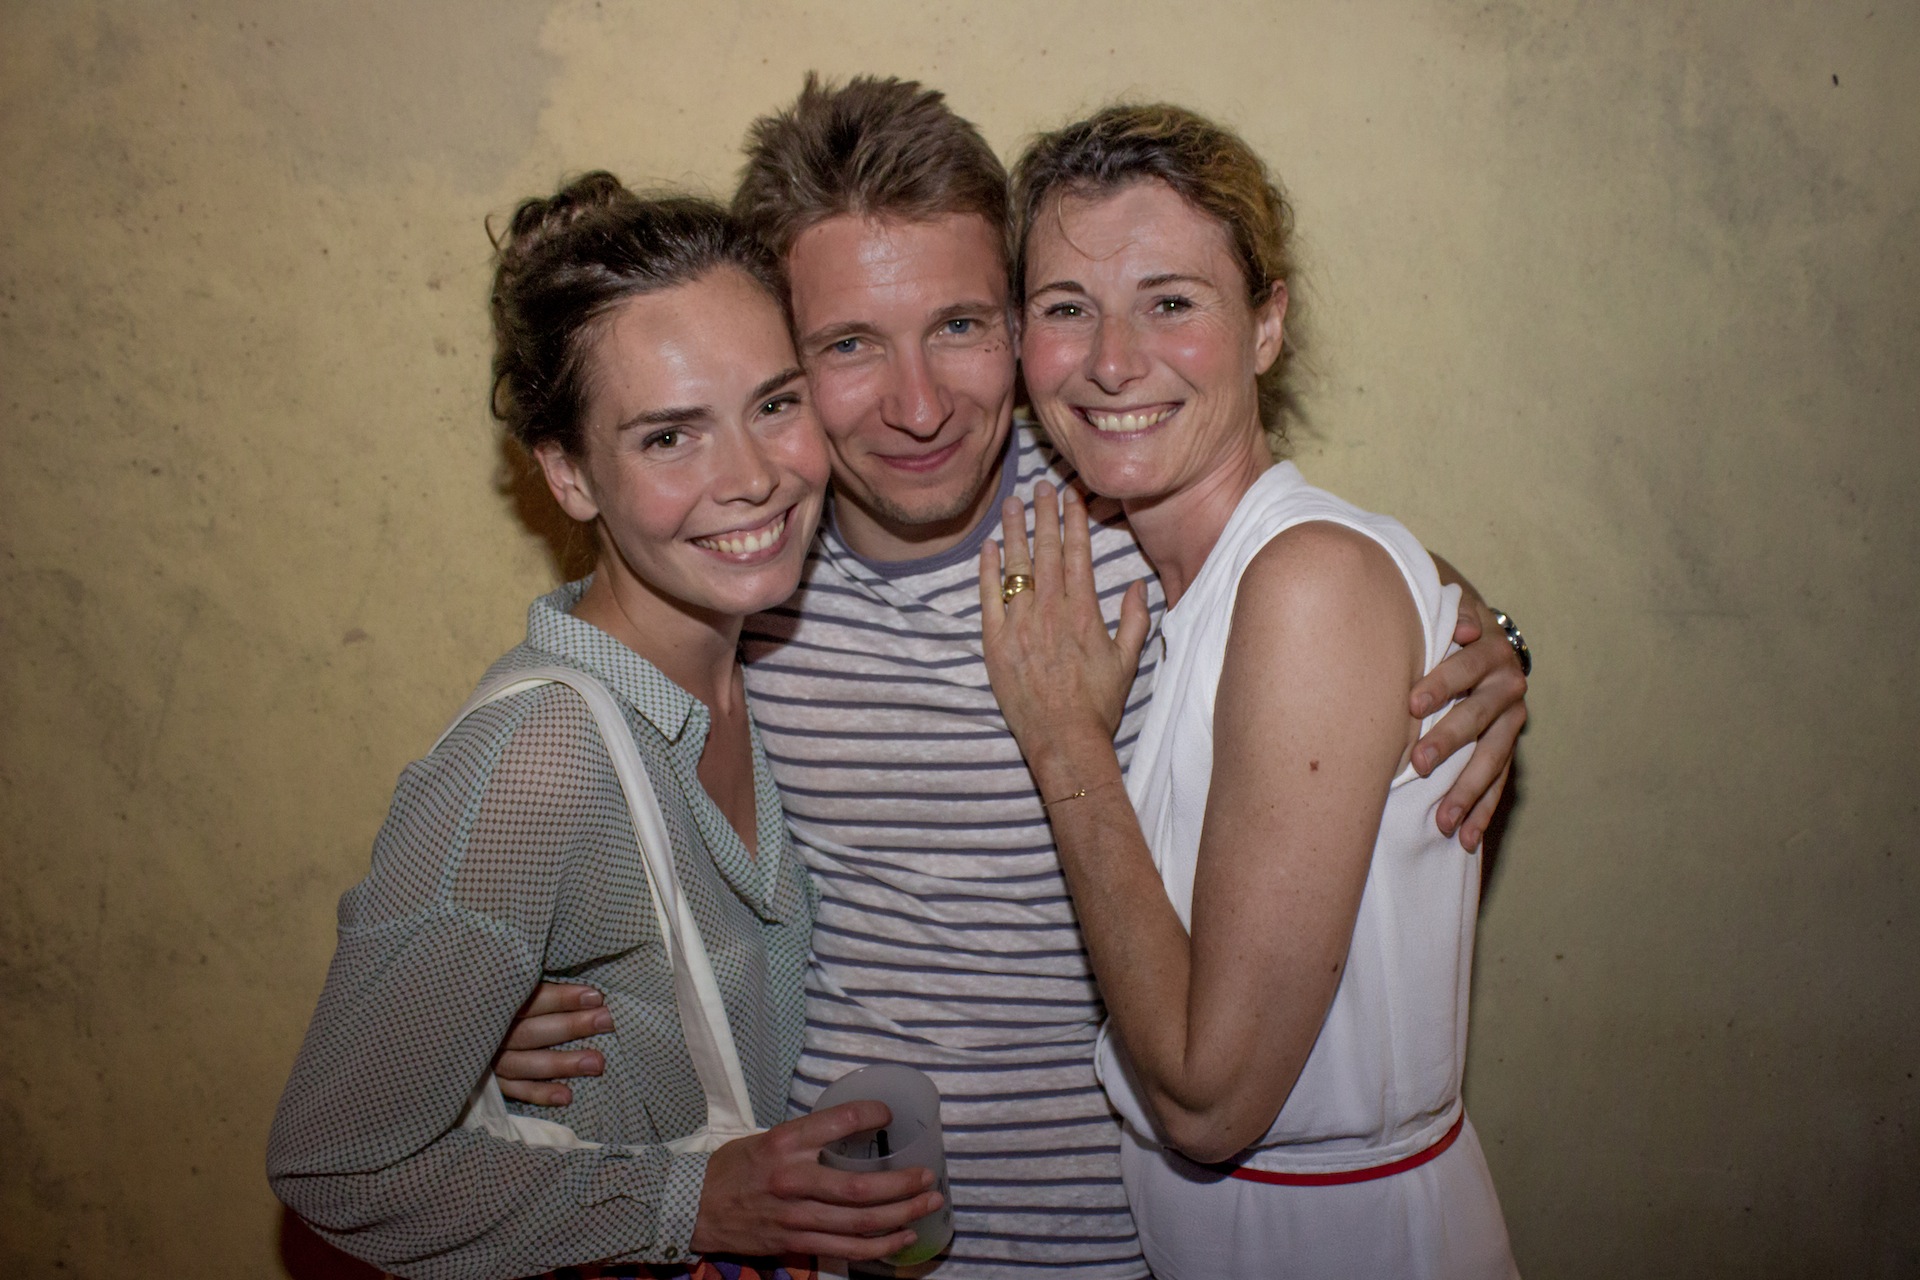 Venezia MORE Festival - 5 juin 2015 (Photo 25 - Laura Didier et Louis Robert)